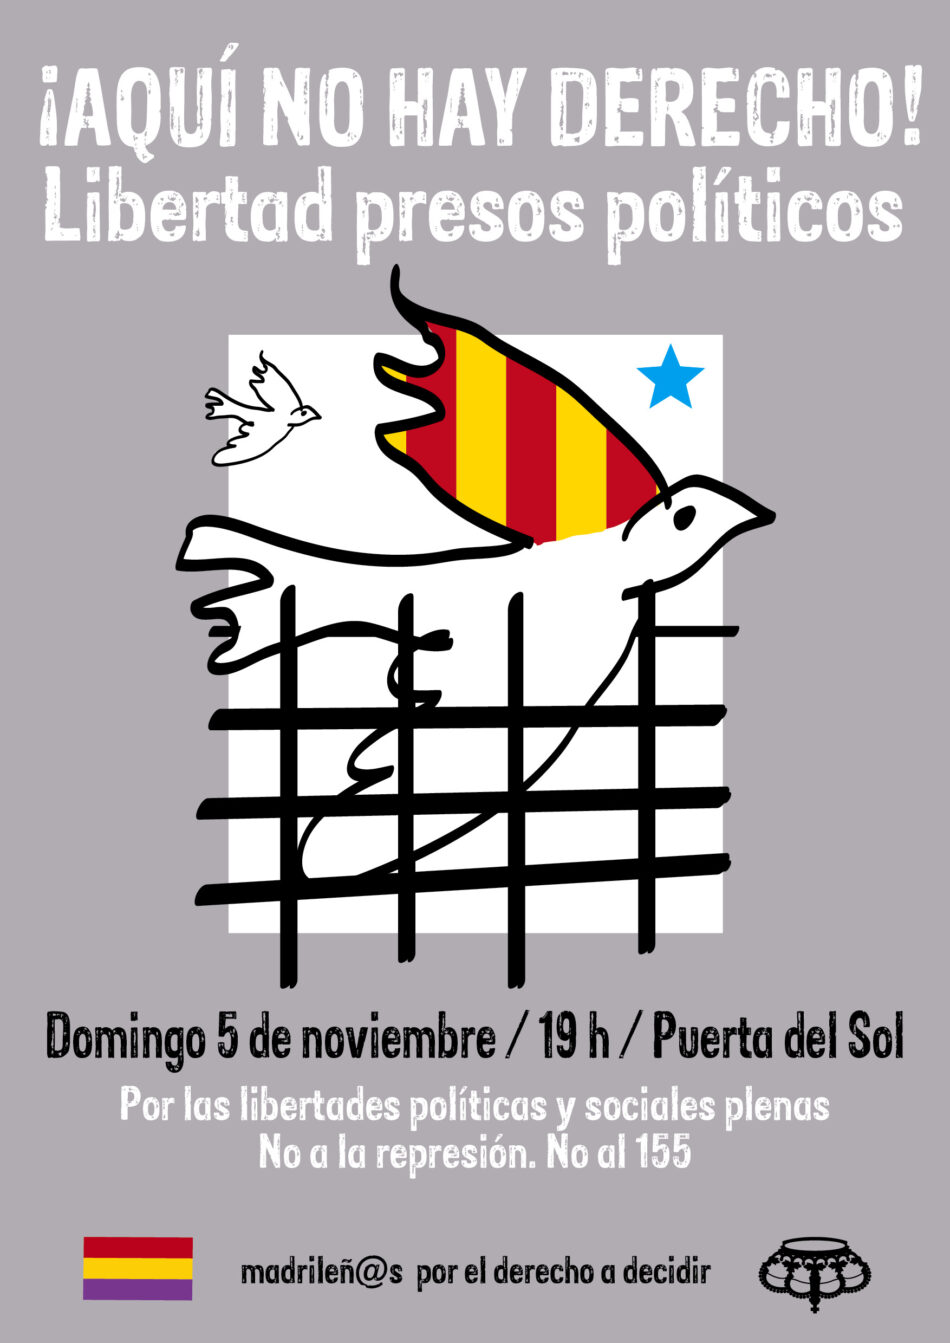 «¡Aquí no hay derecho! Libertad presos políticos»: movilización domingo 5 de noviembre